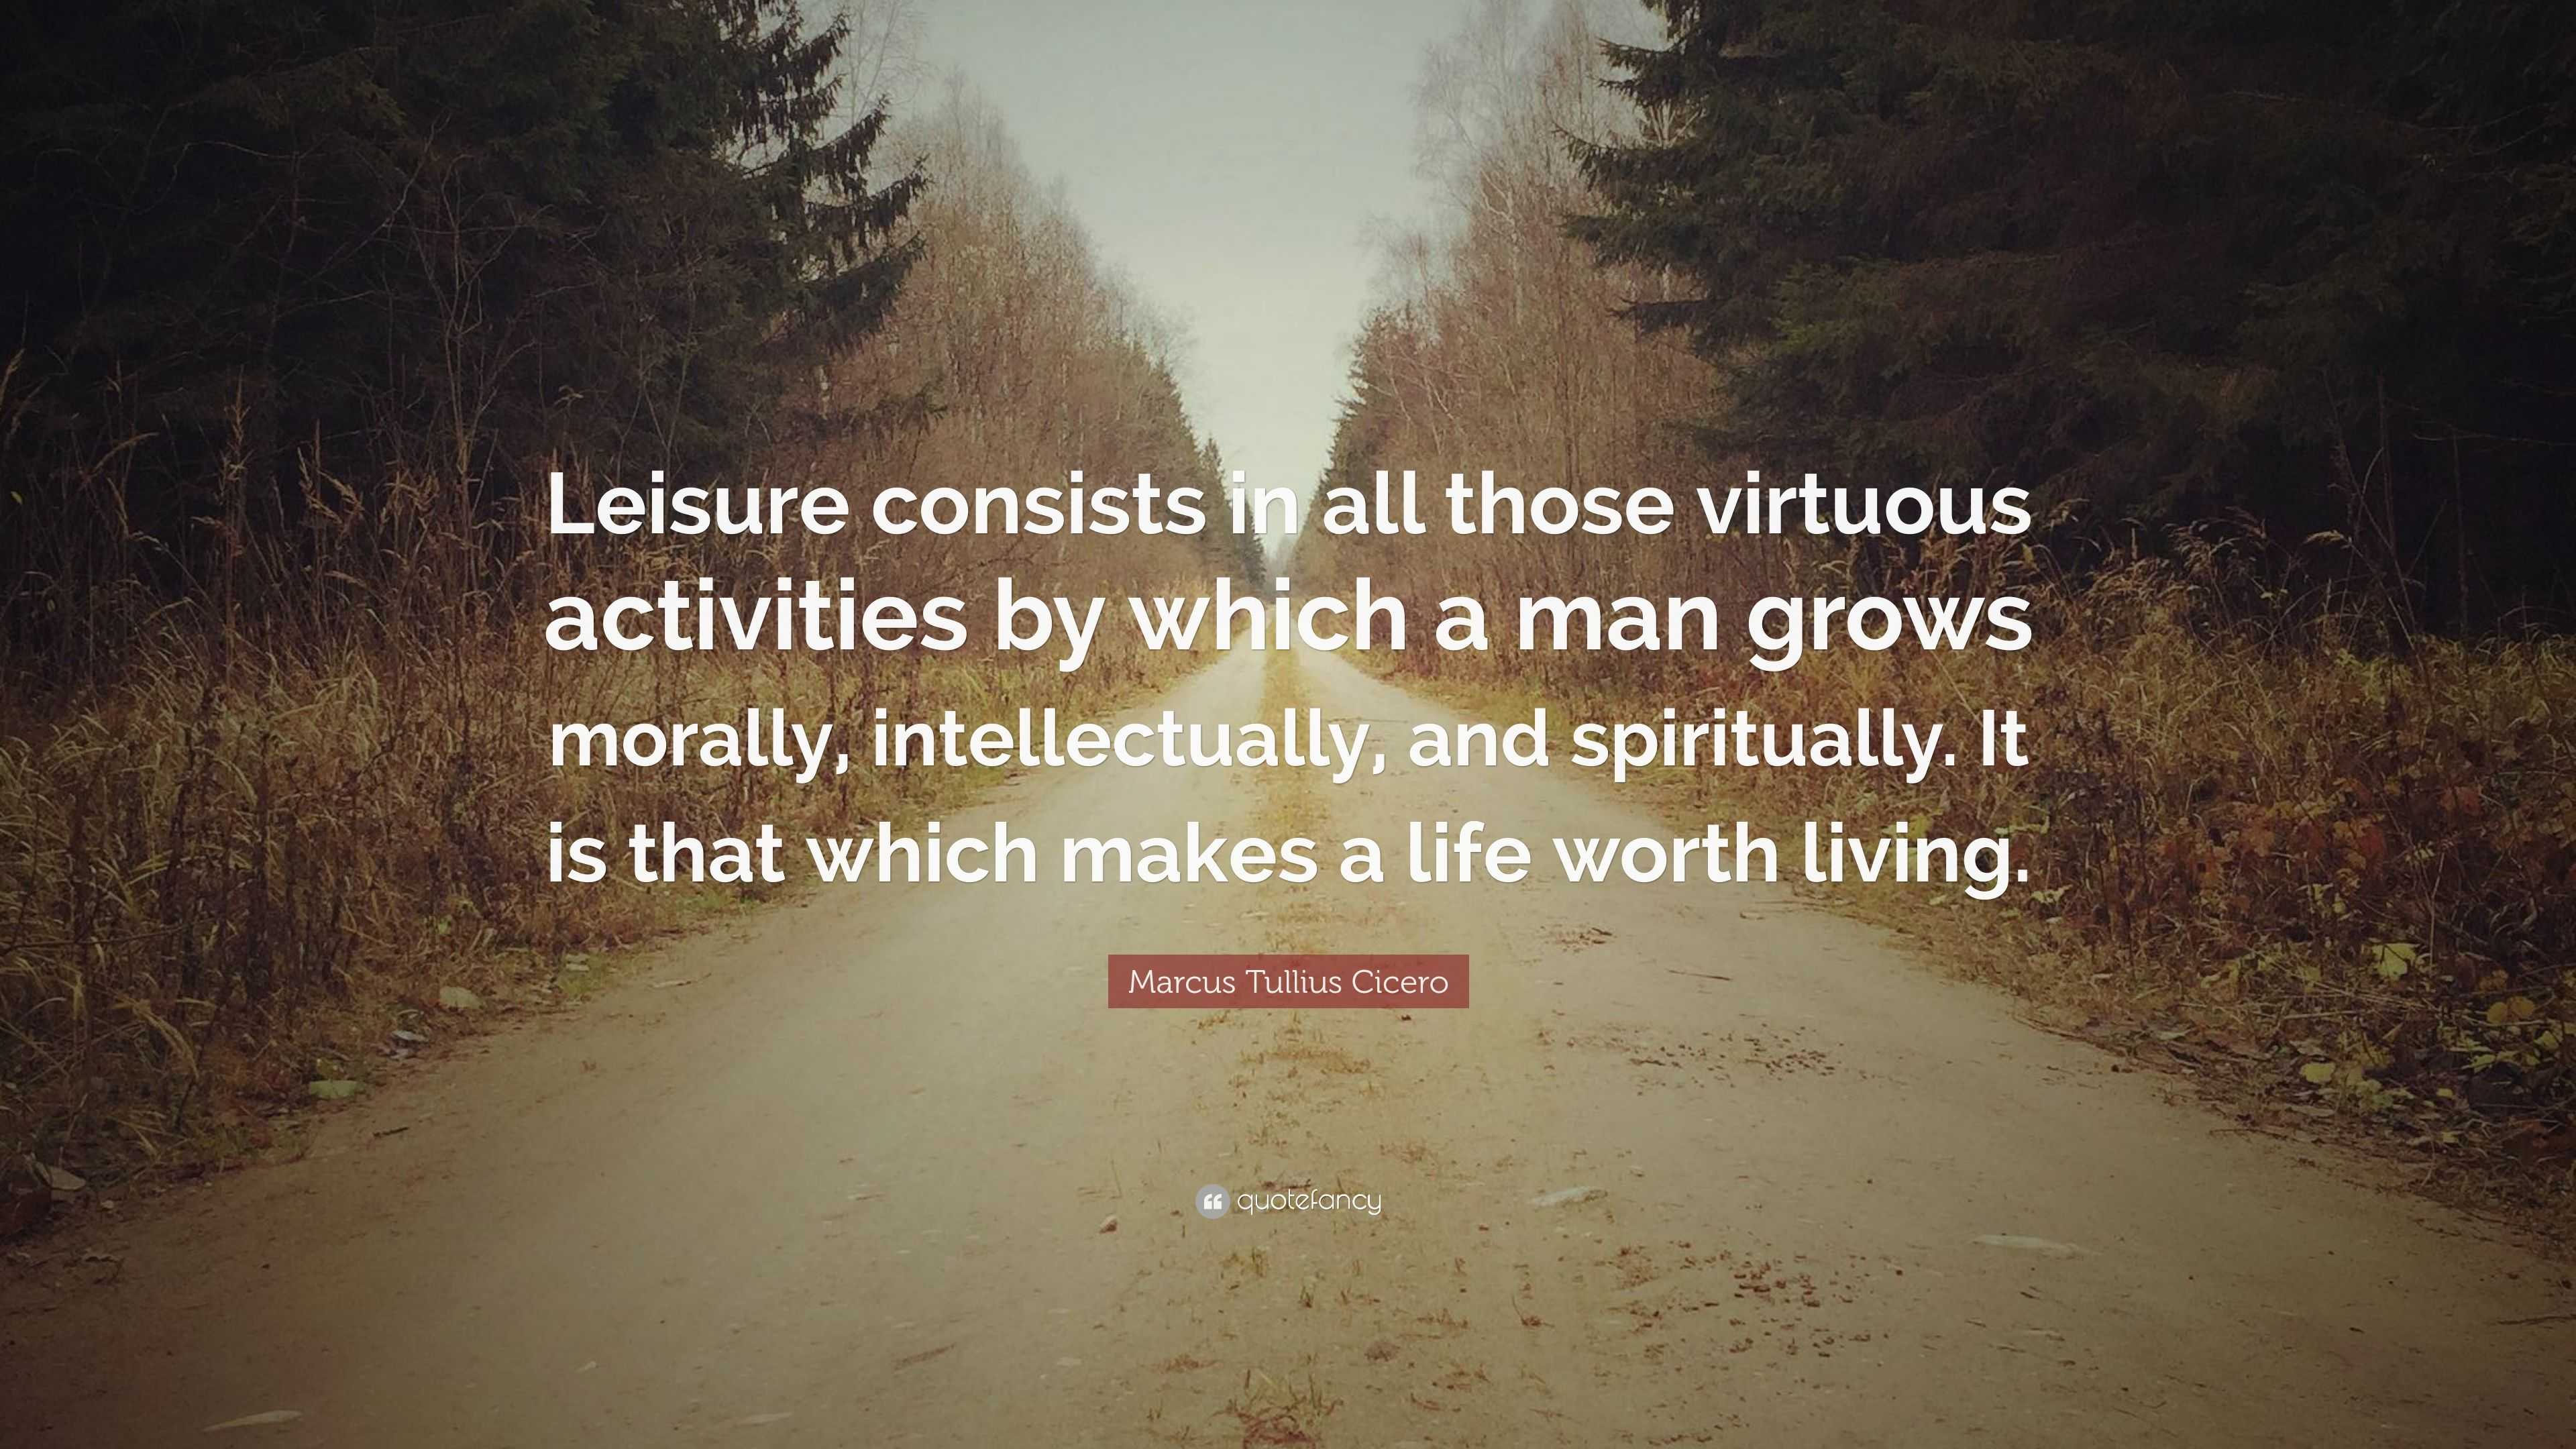 Marcus Tullius Cicero Quote: “Leisure consists in all those virtuous ...